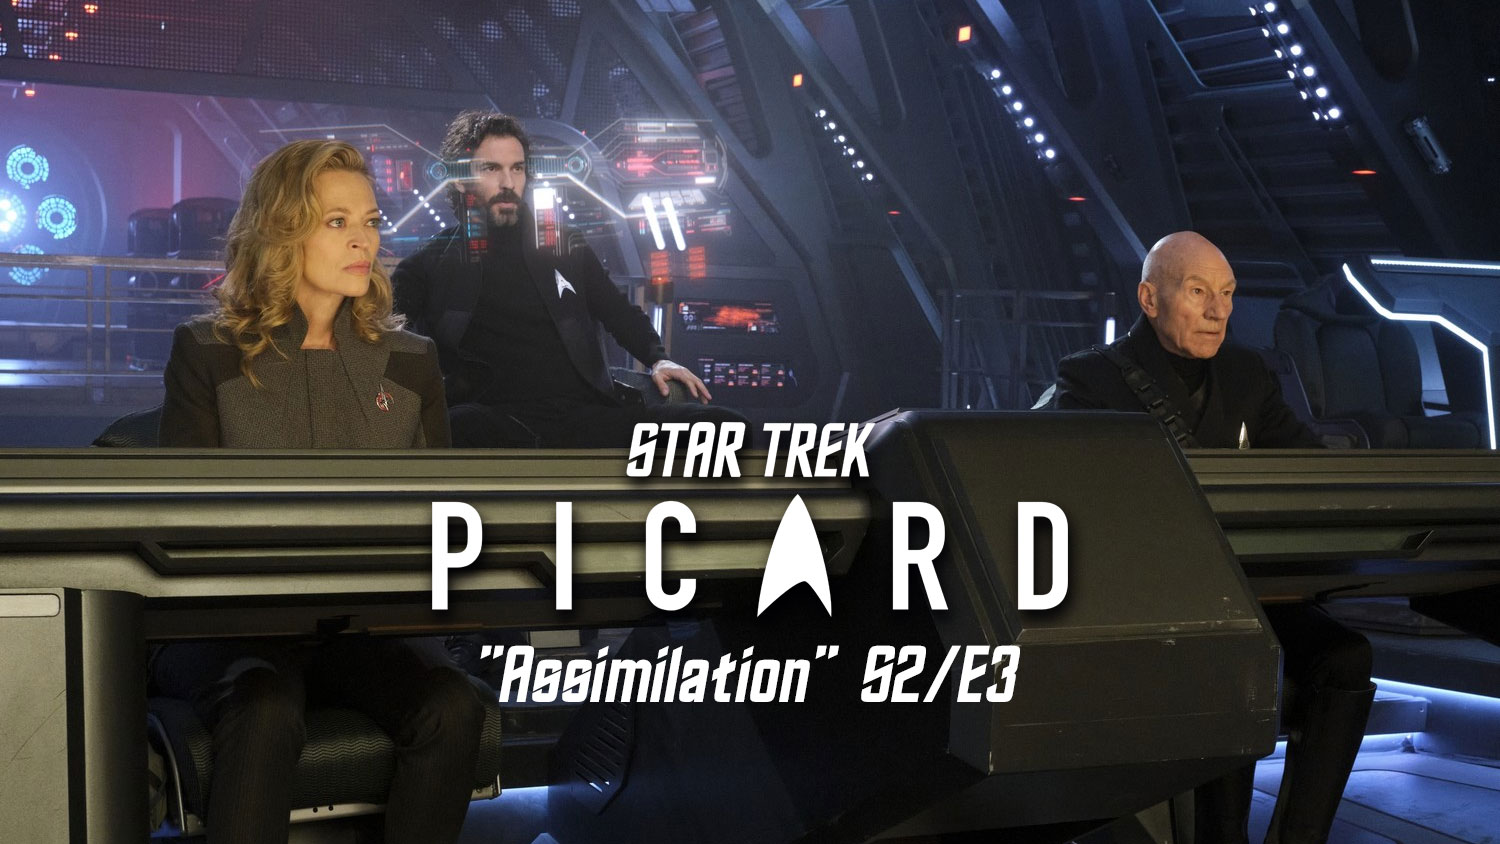 Star Trek Picard S2E3 Assimilation